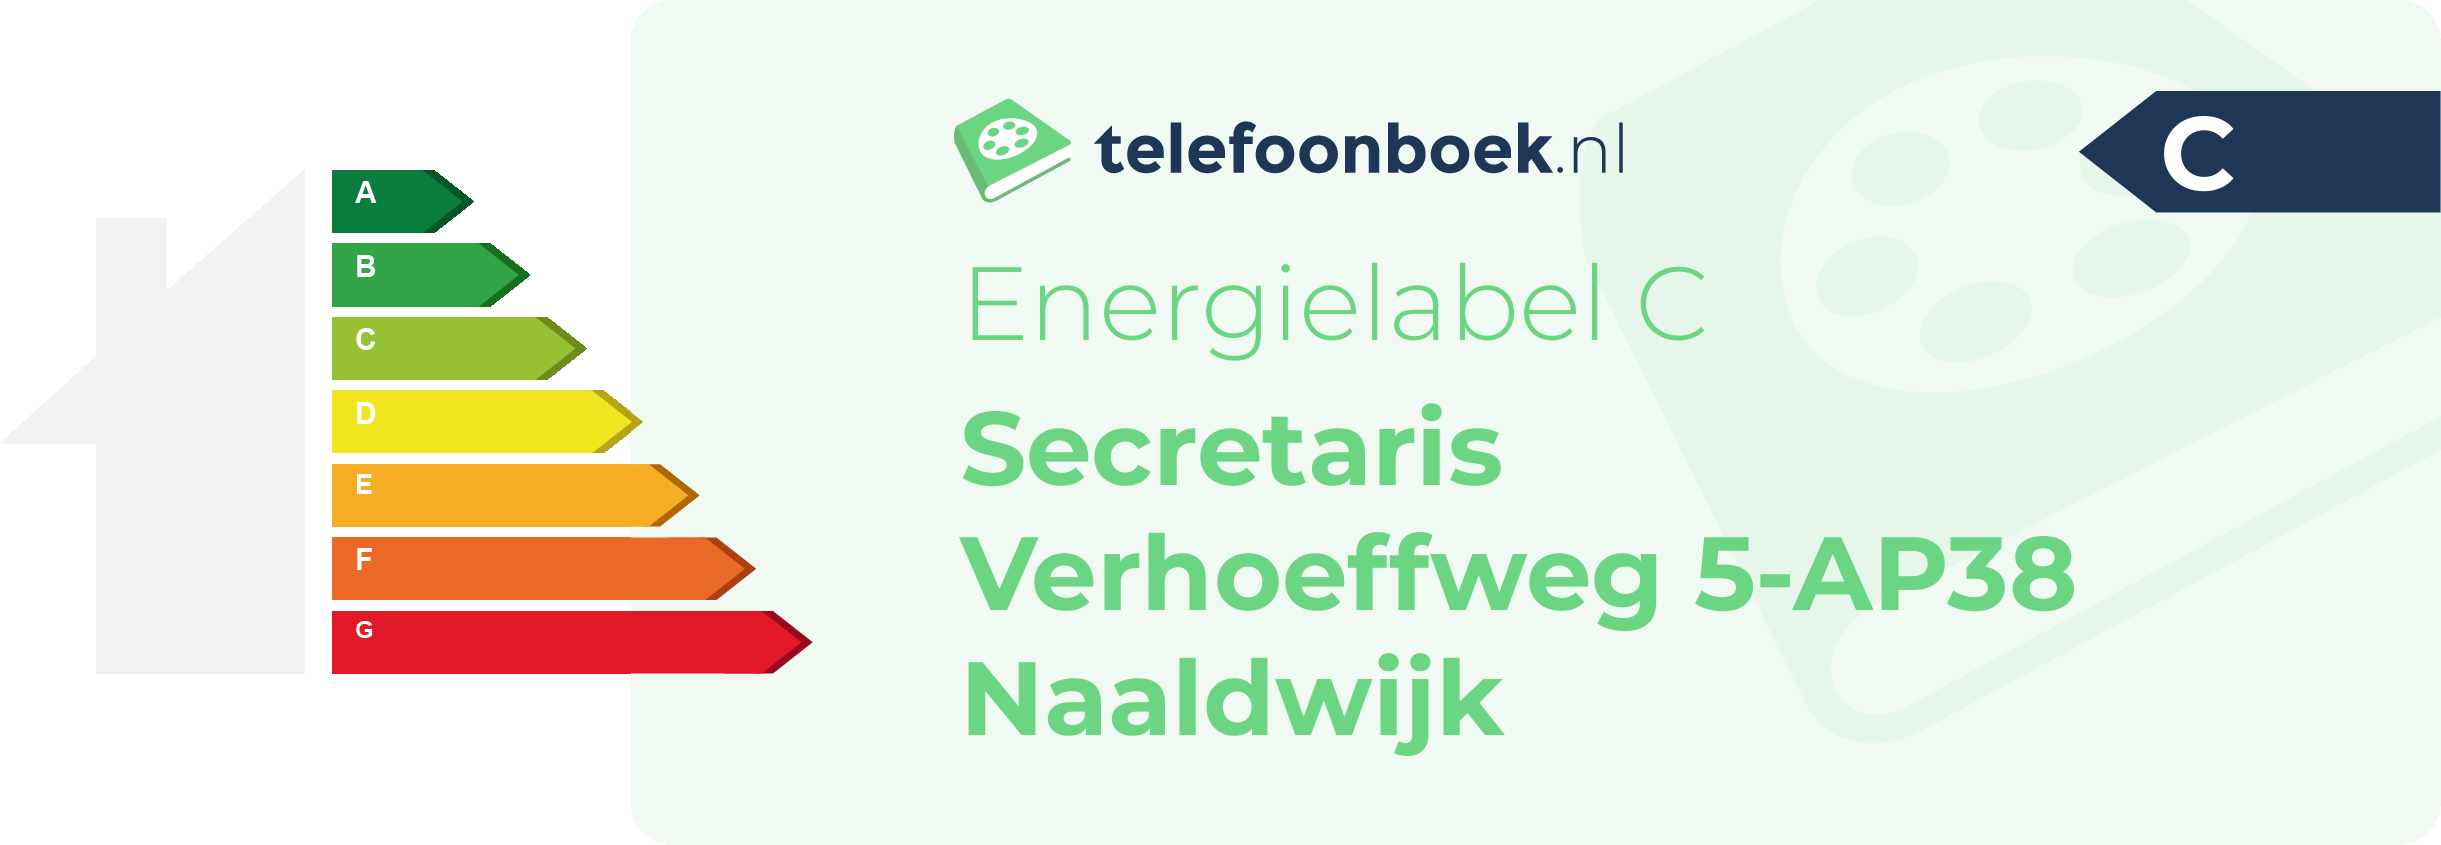 Energielabel Secretaris Verhoeffweg 5-AP38 Naaldwijk